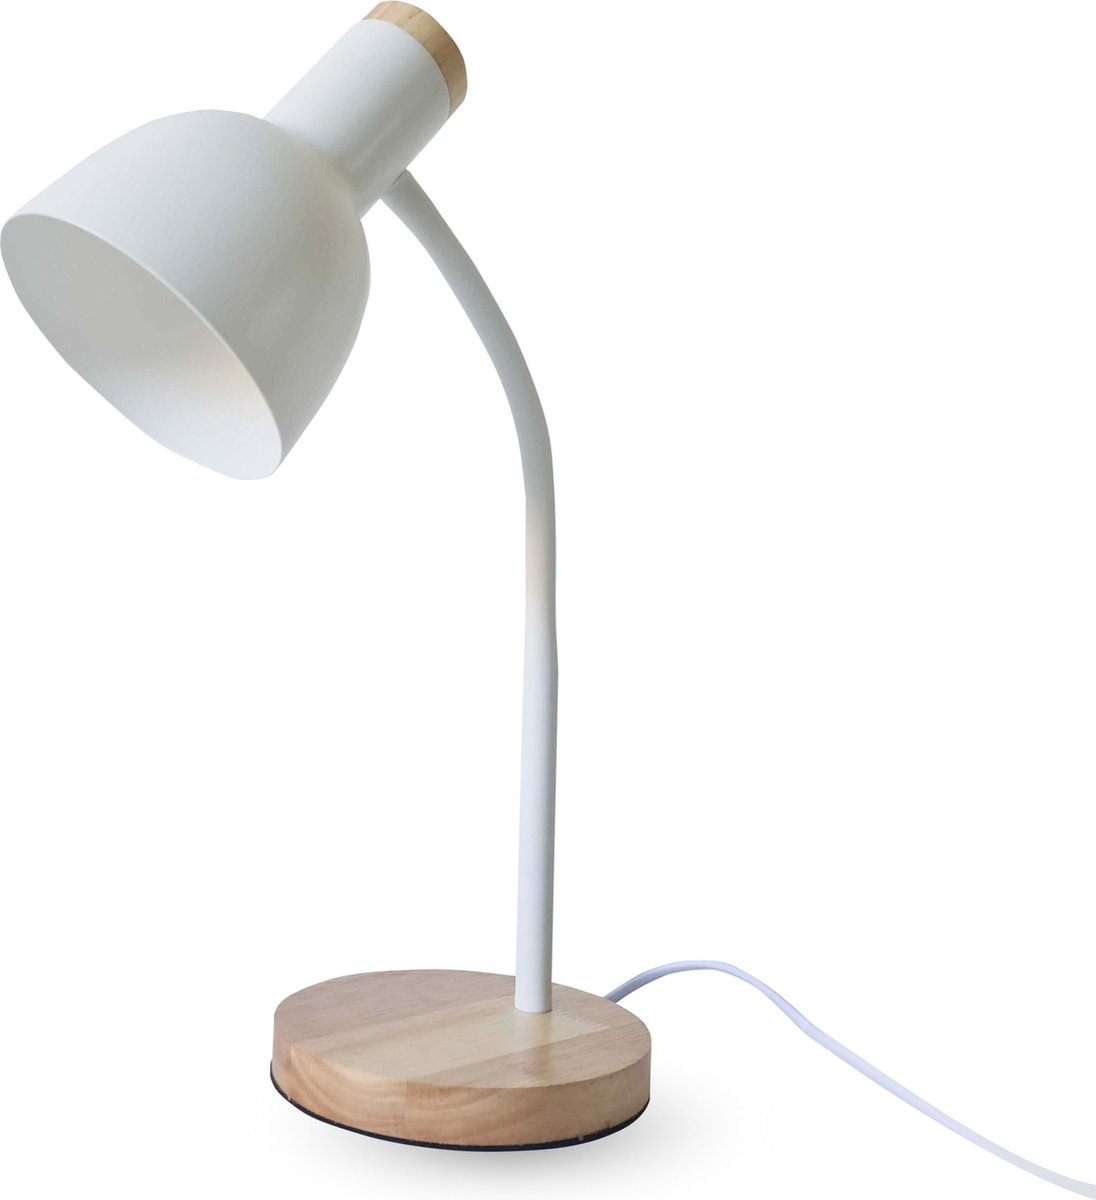 Raiseking ® - Bureaulamp - Leeslamp - Incl. Spaarlamp - Hout - Metaal - E27 - Kantelbaar - Meerdere kleuren - Bureaulampen - Wit